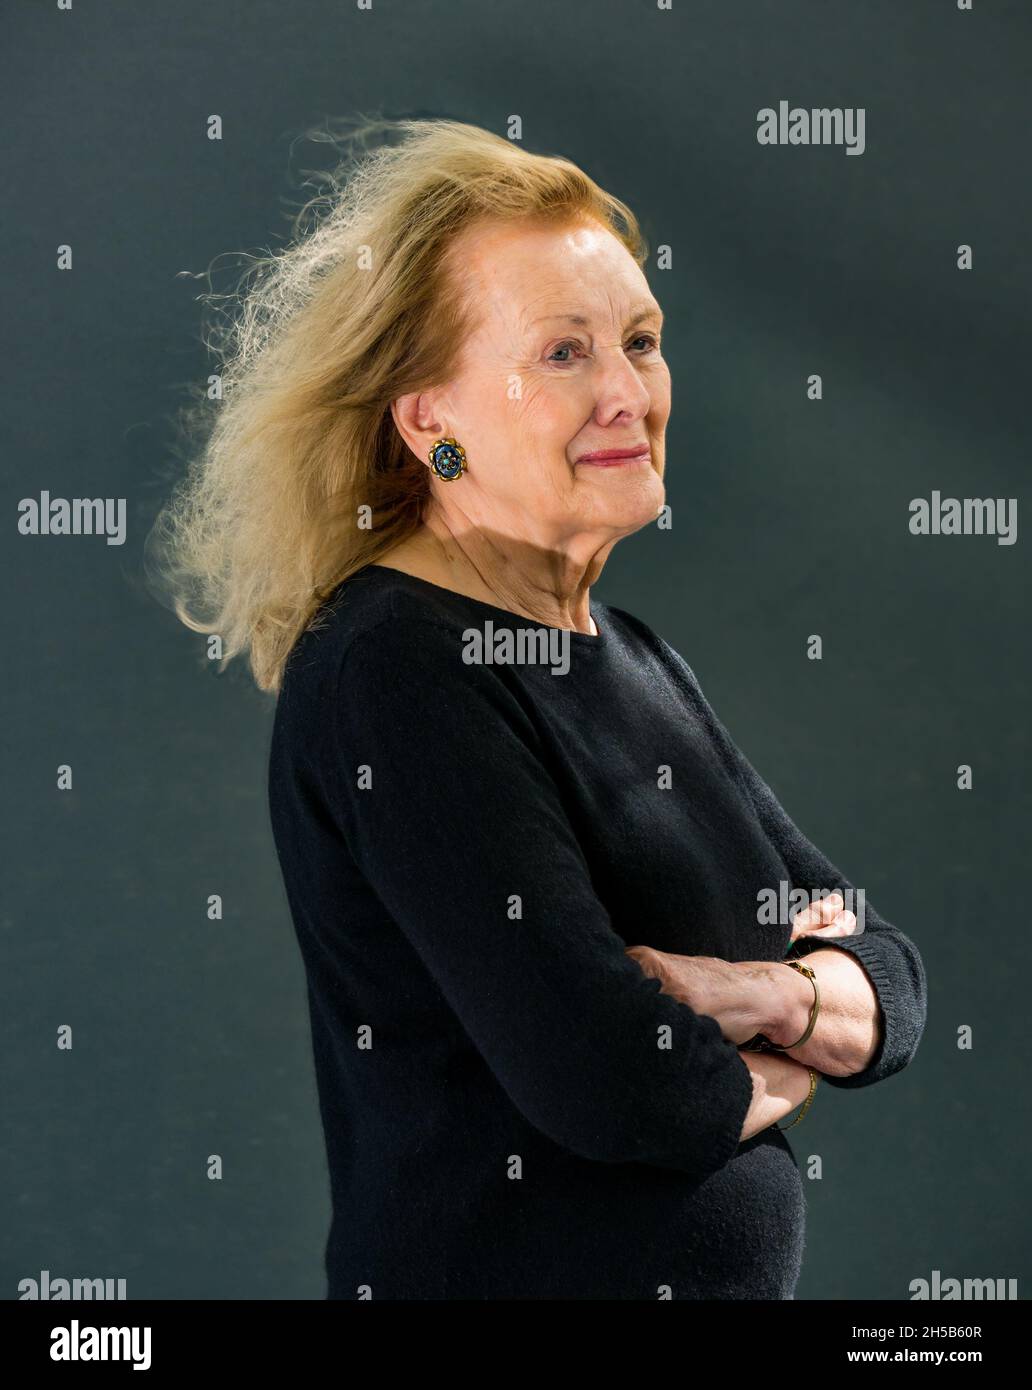 Annie Ernaux, auteure française et écrivaine de longue date du Booker Prize, au Edinburgh International Festival, Écosse, Royaume-Uni en 2019 Banque D'Images